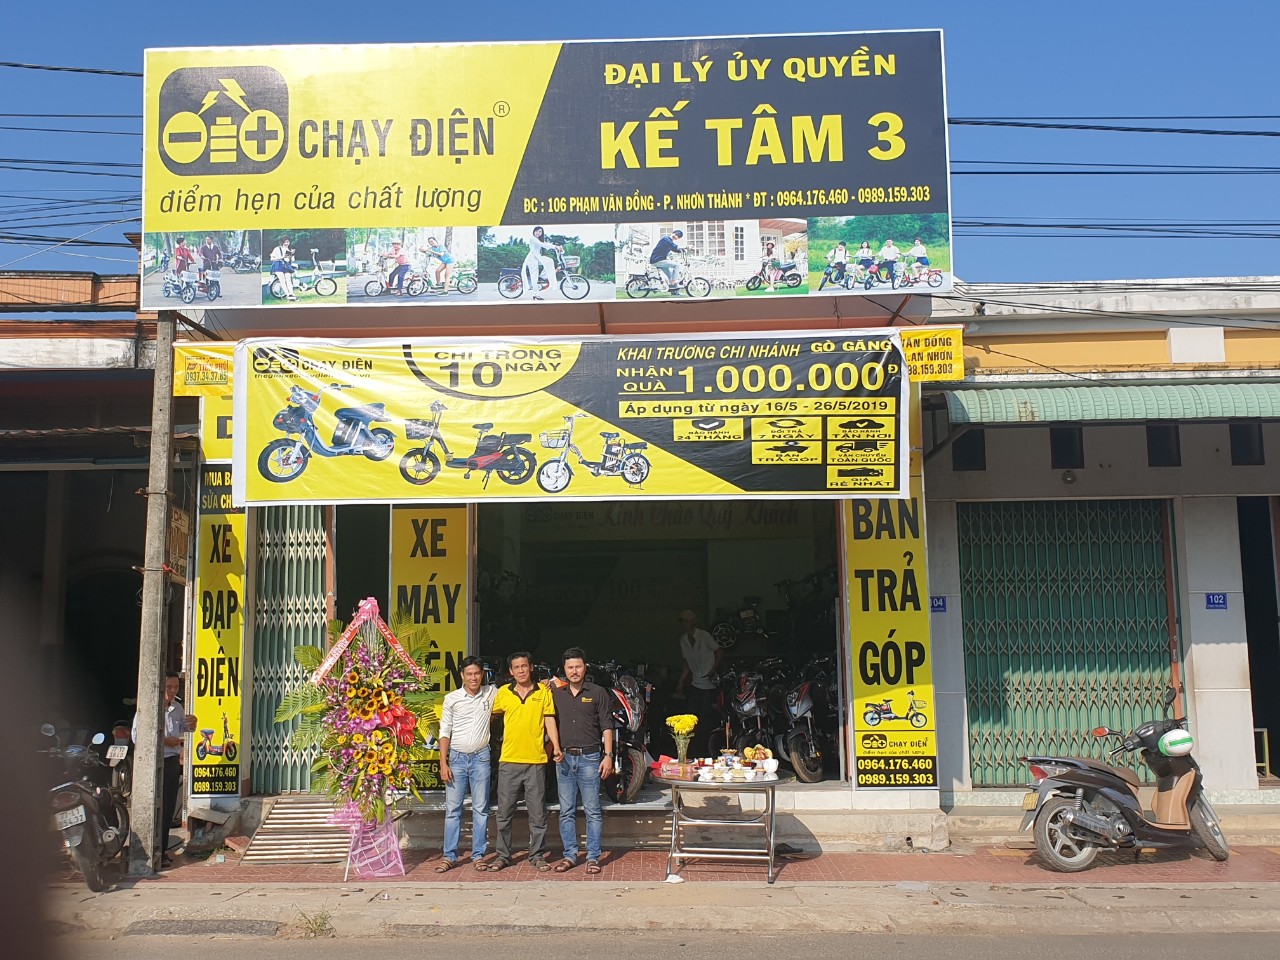 Đại lý ủy quyền Kế Tâm 3 - Khai trương vào ngày 16/5/2019 tại 106 Phạm Văn Đồng – P.Nhơn Thành